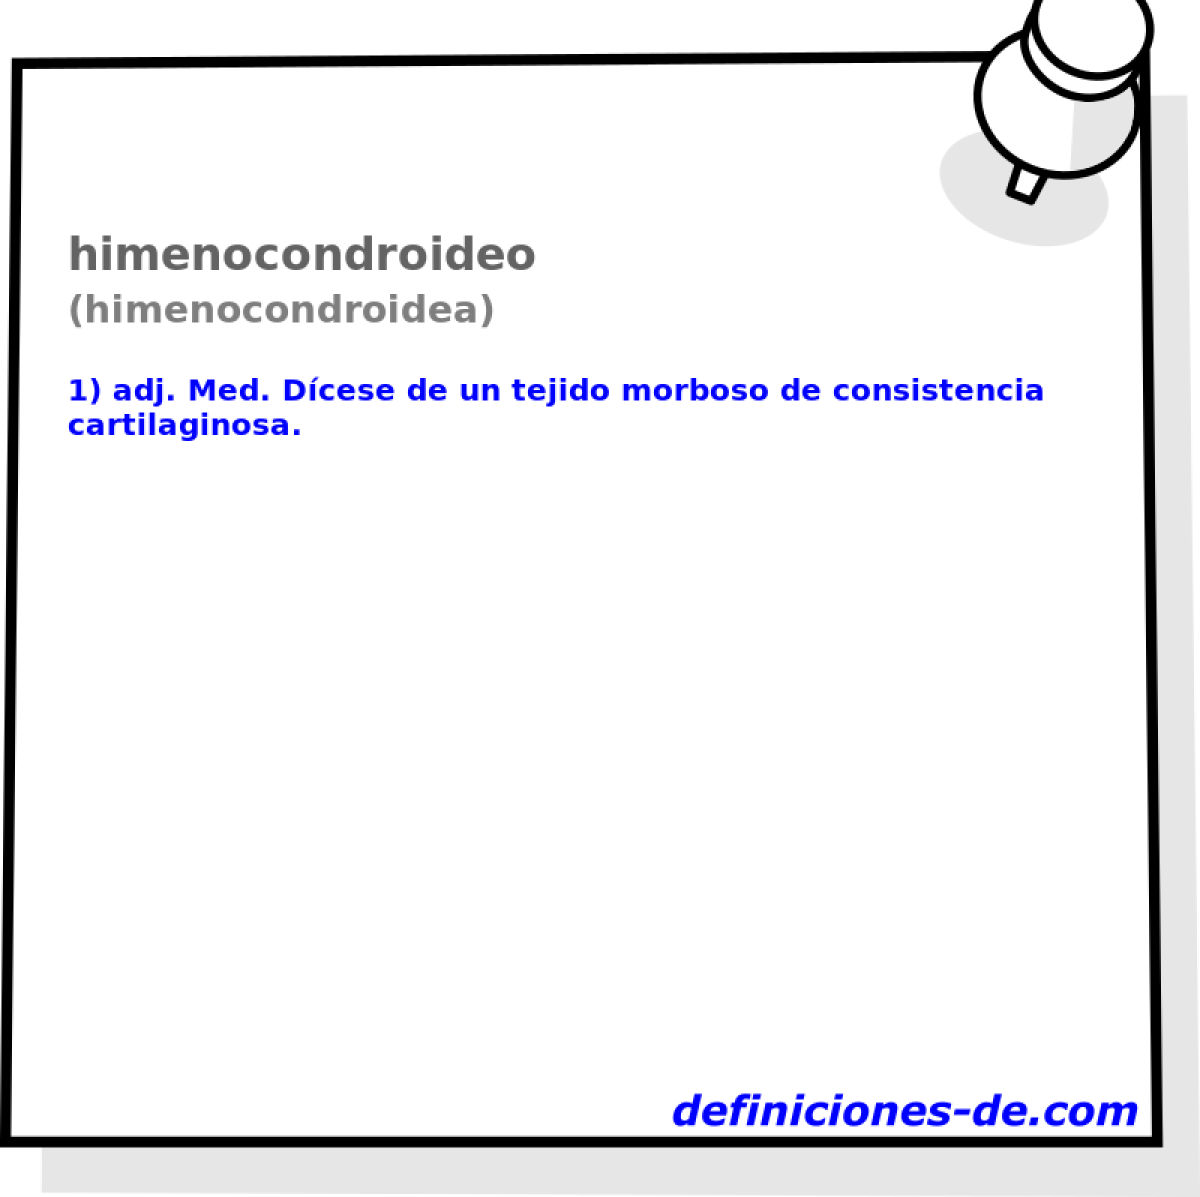 himenocondroideo (himenocondroidea)